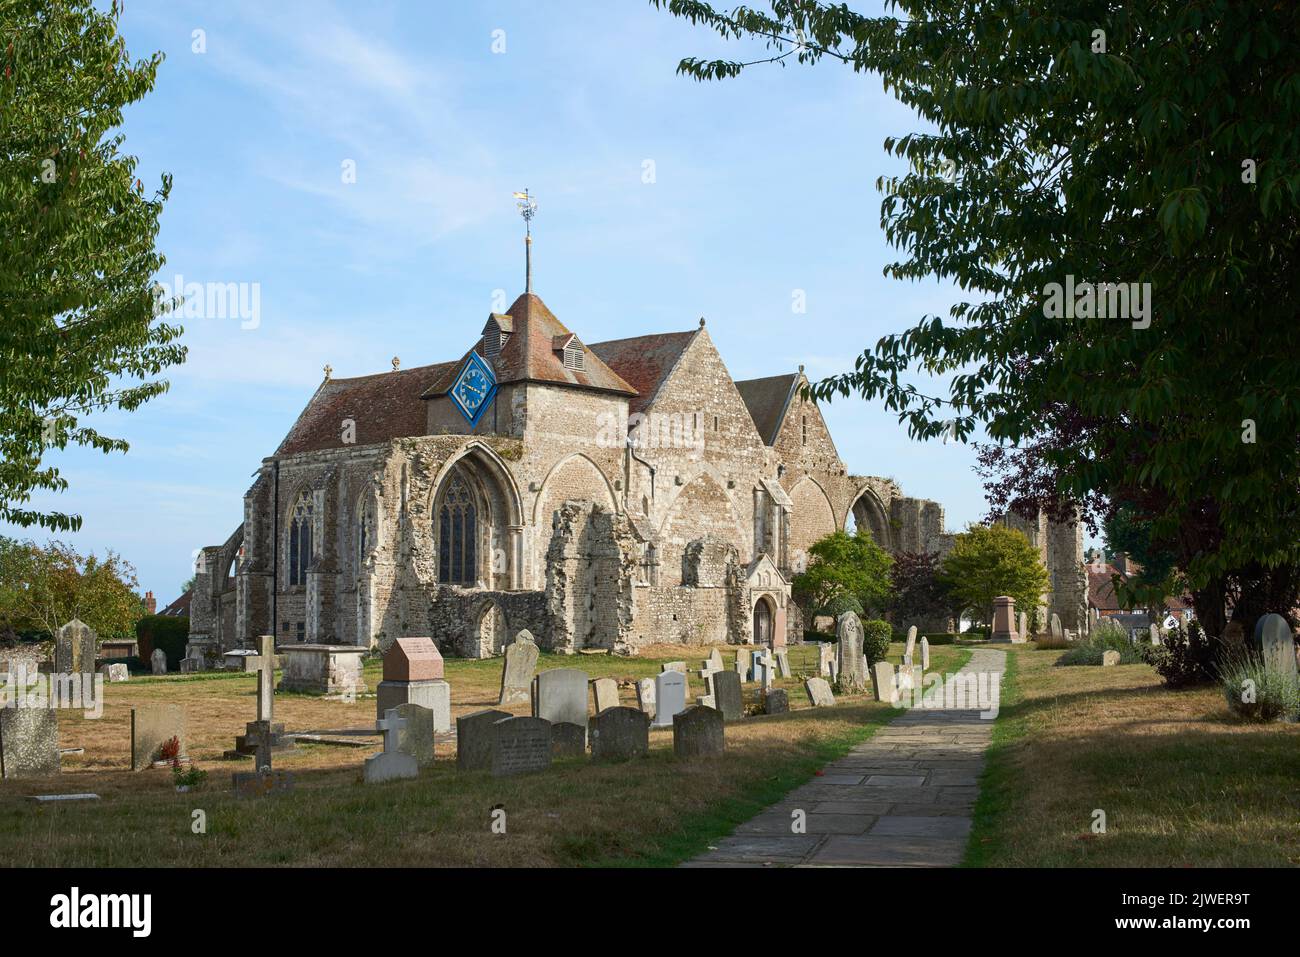 La antigua iglesia de St Thomas the Martyr en la histórica ciudad de Winchelsea, East Sussex, Reino Unido Foto de stock